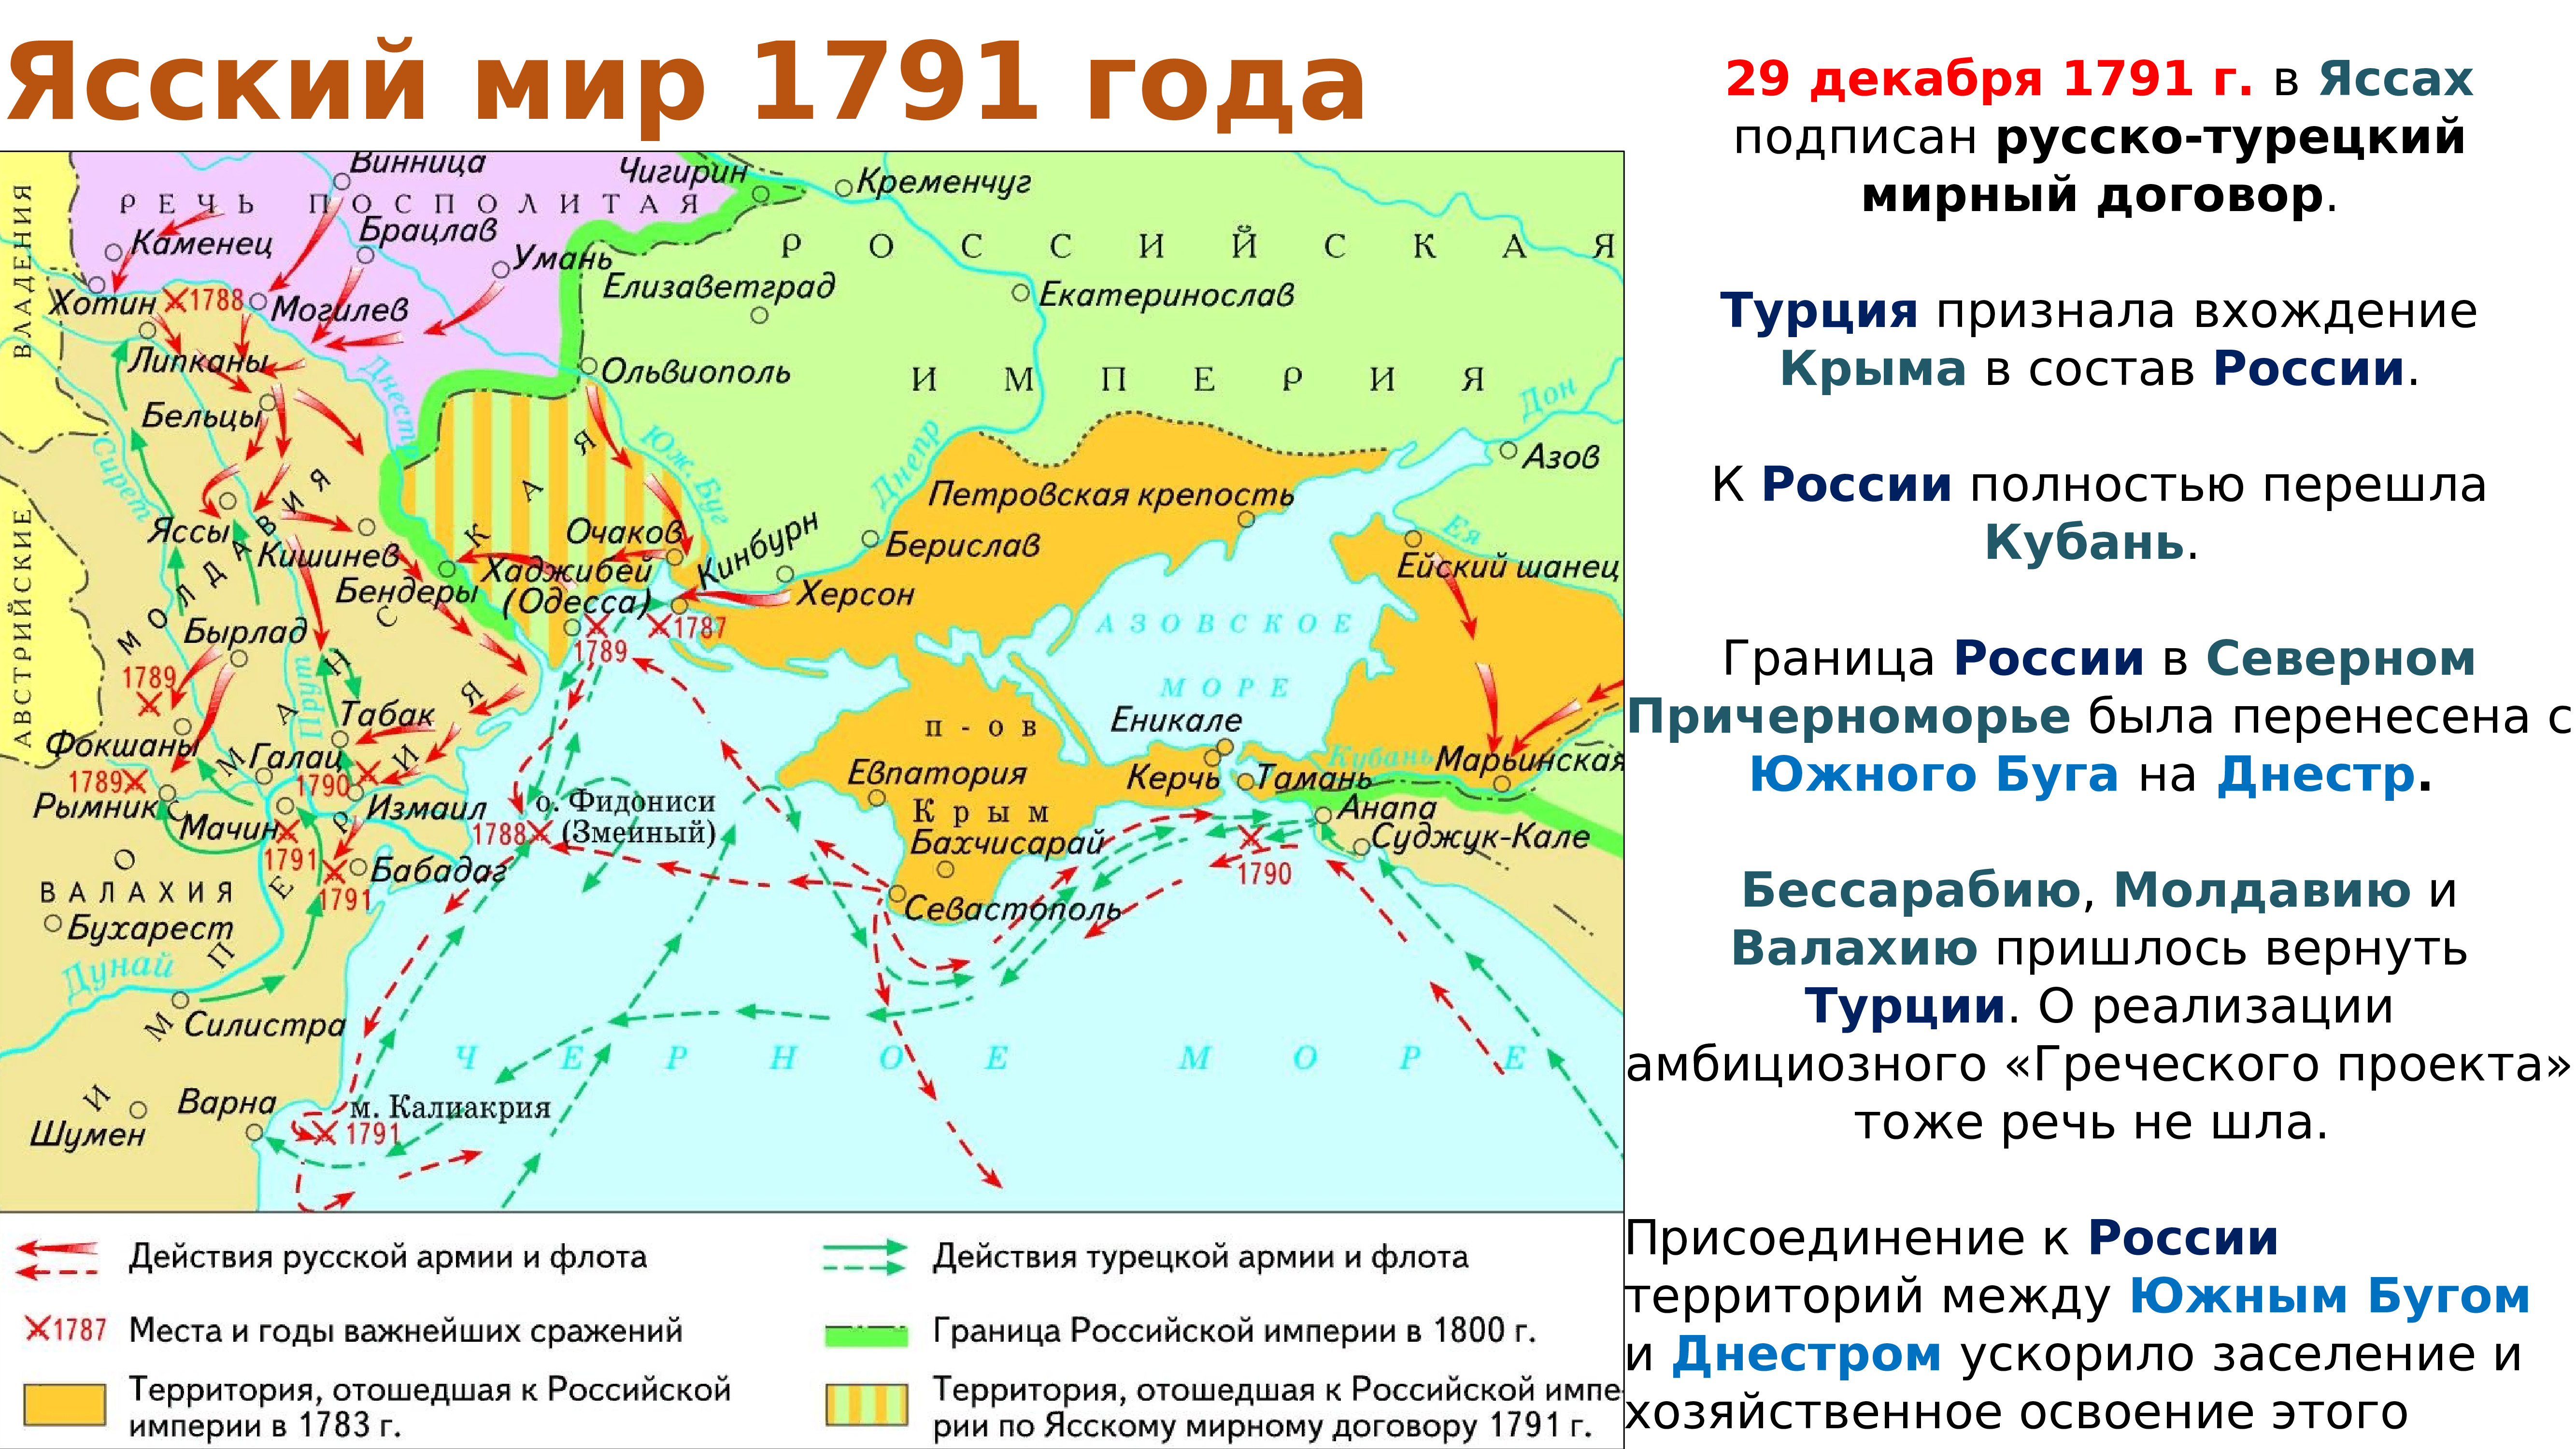 Транспортные пути при екатерине 2. Карта русско-турецкой войны 1787-1791 г.